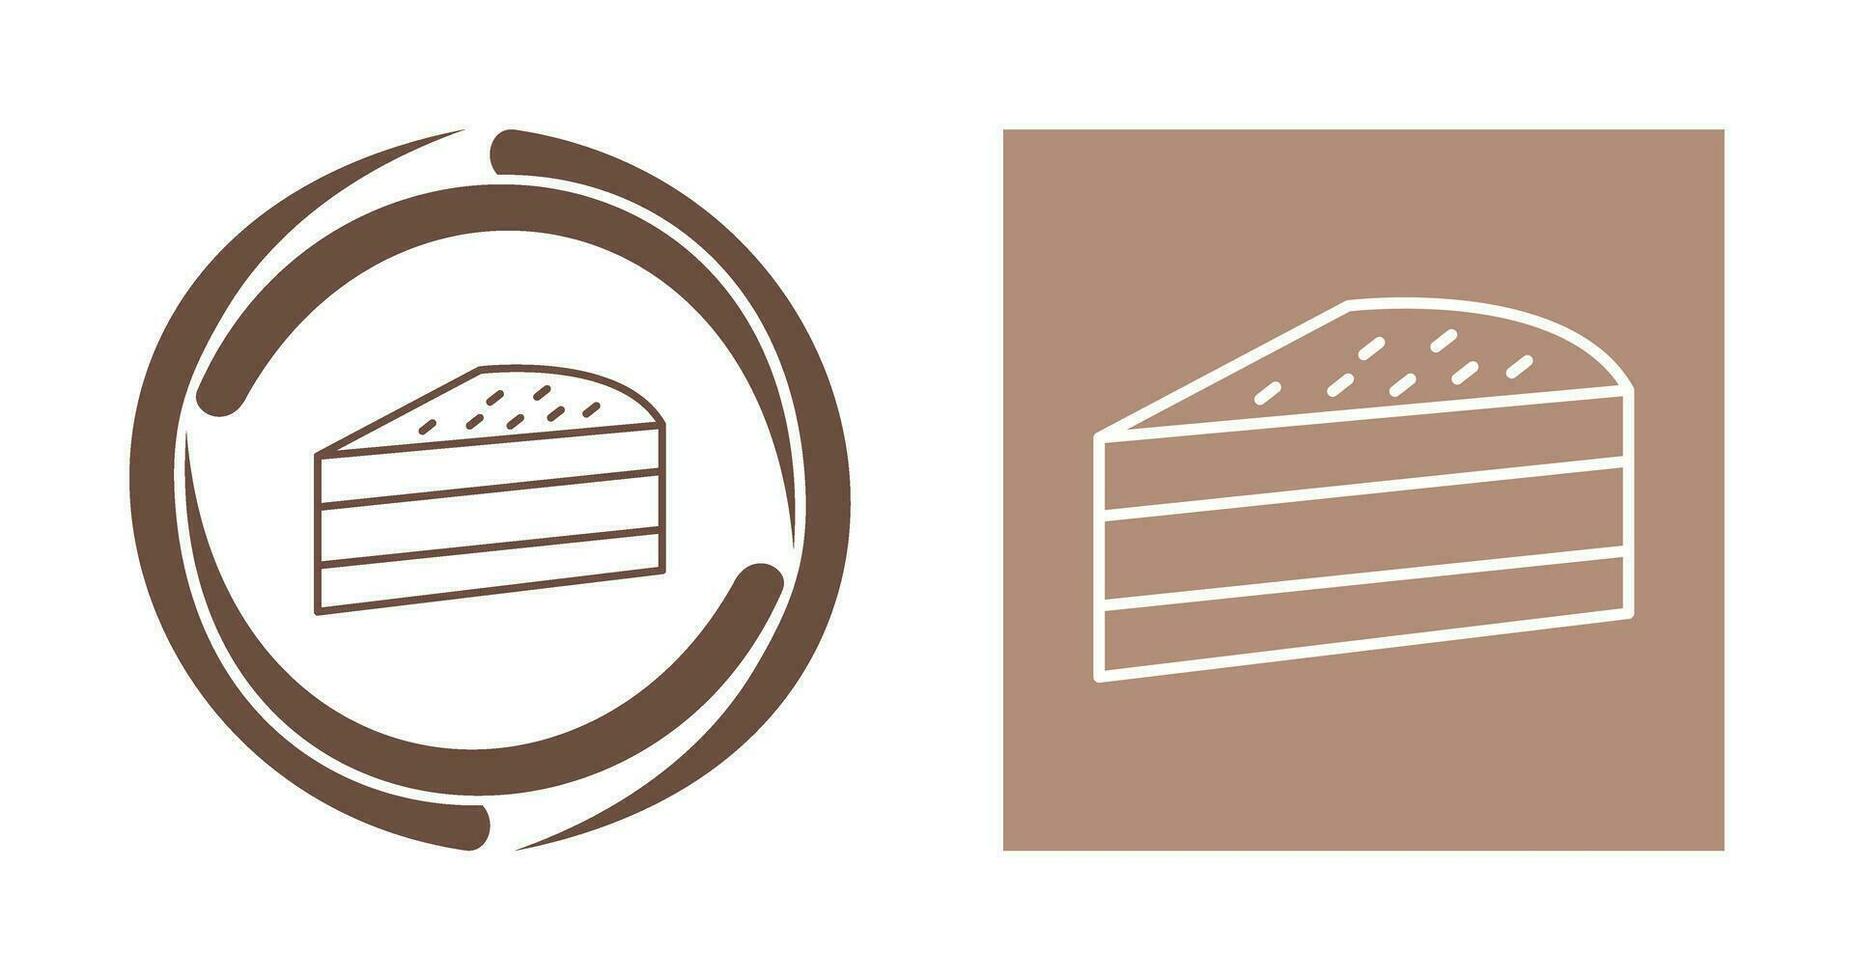 ícone de vetor de fatia de bolo